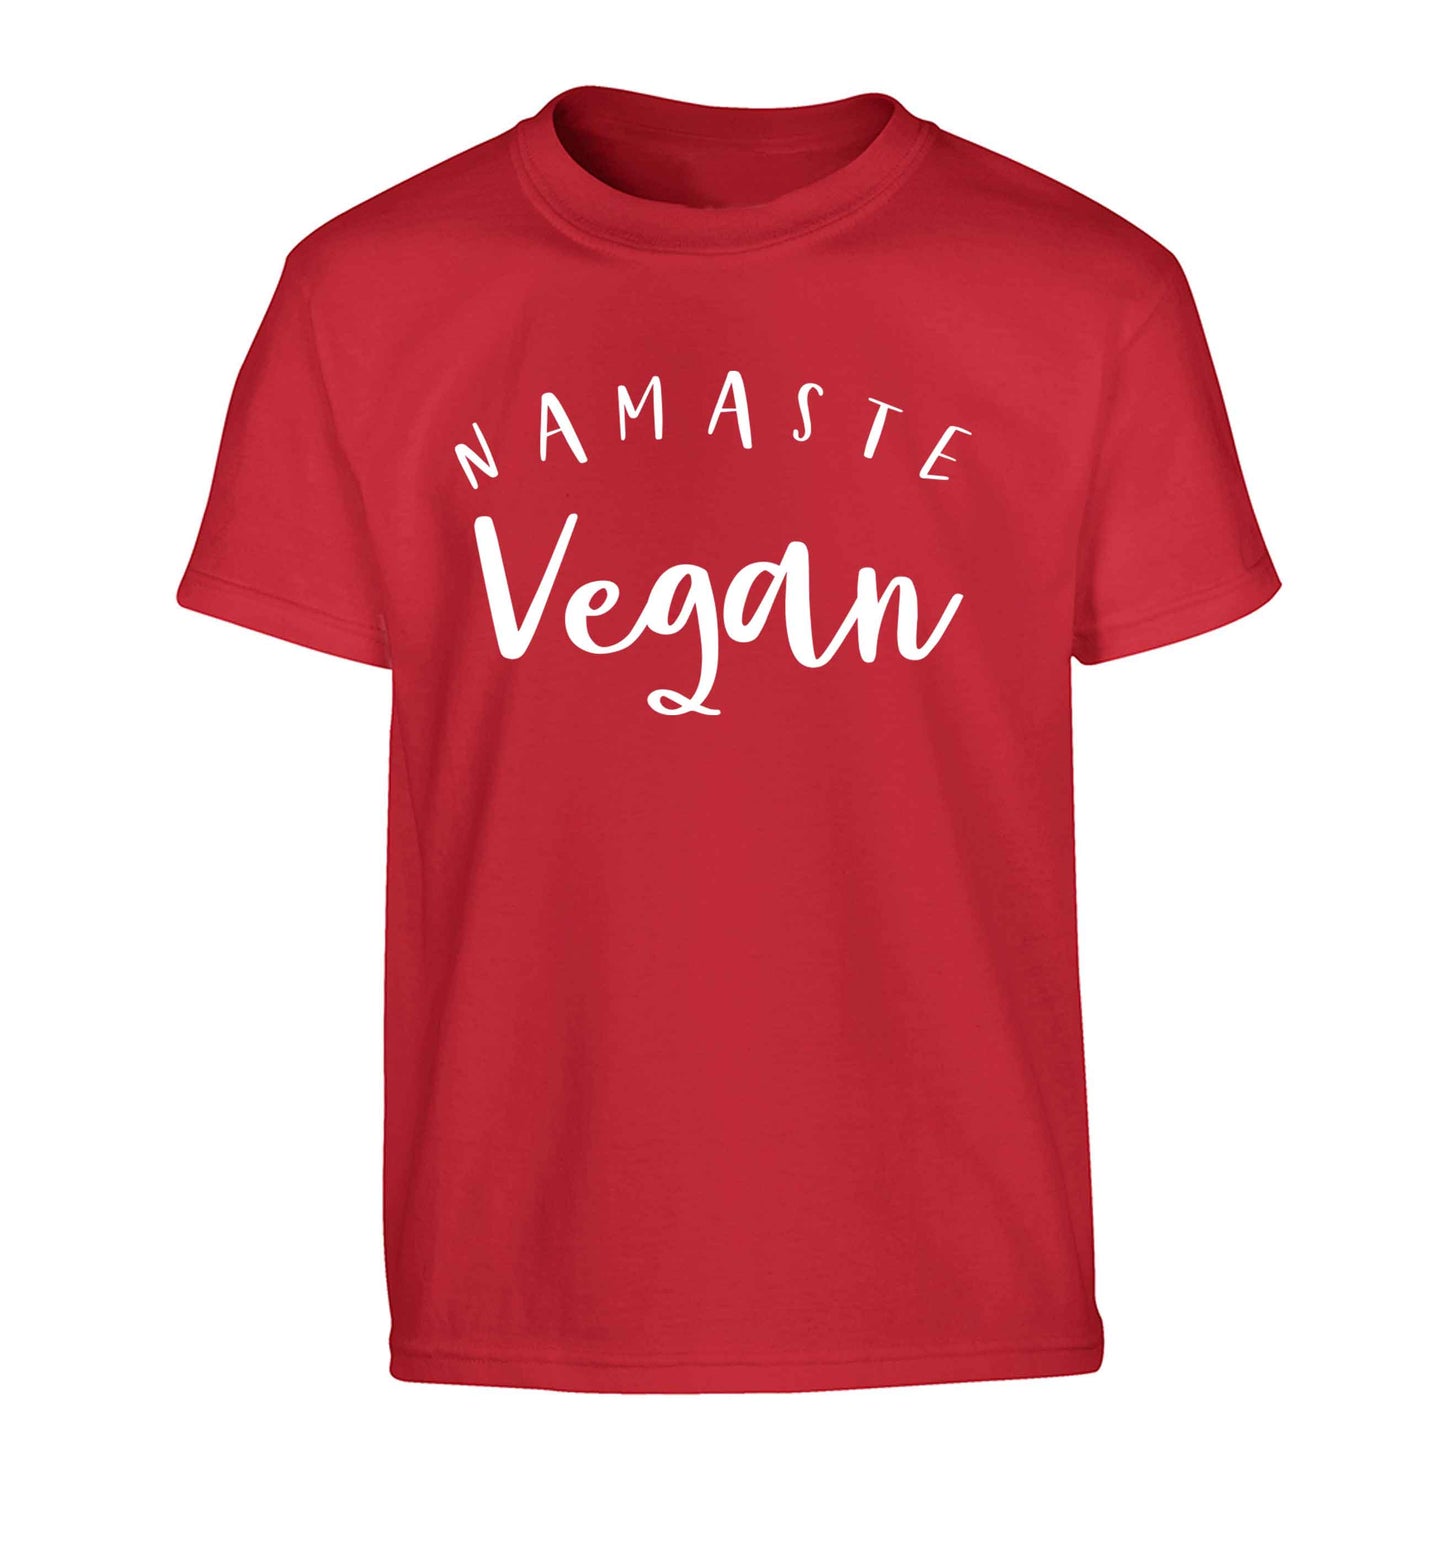 Namaste vegan Children's red Tshirt 12-13 Years